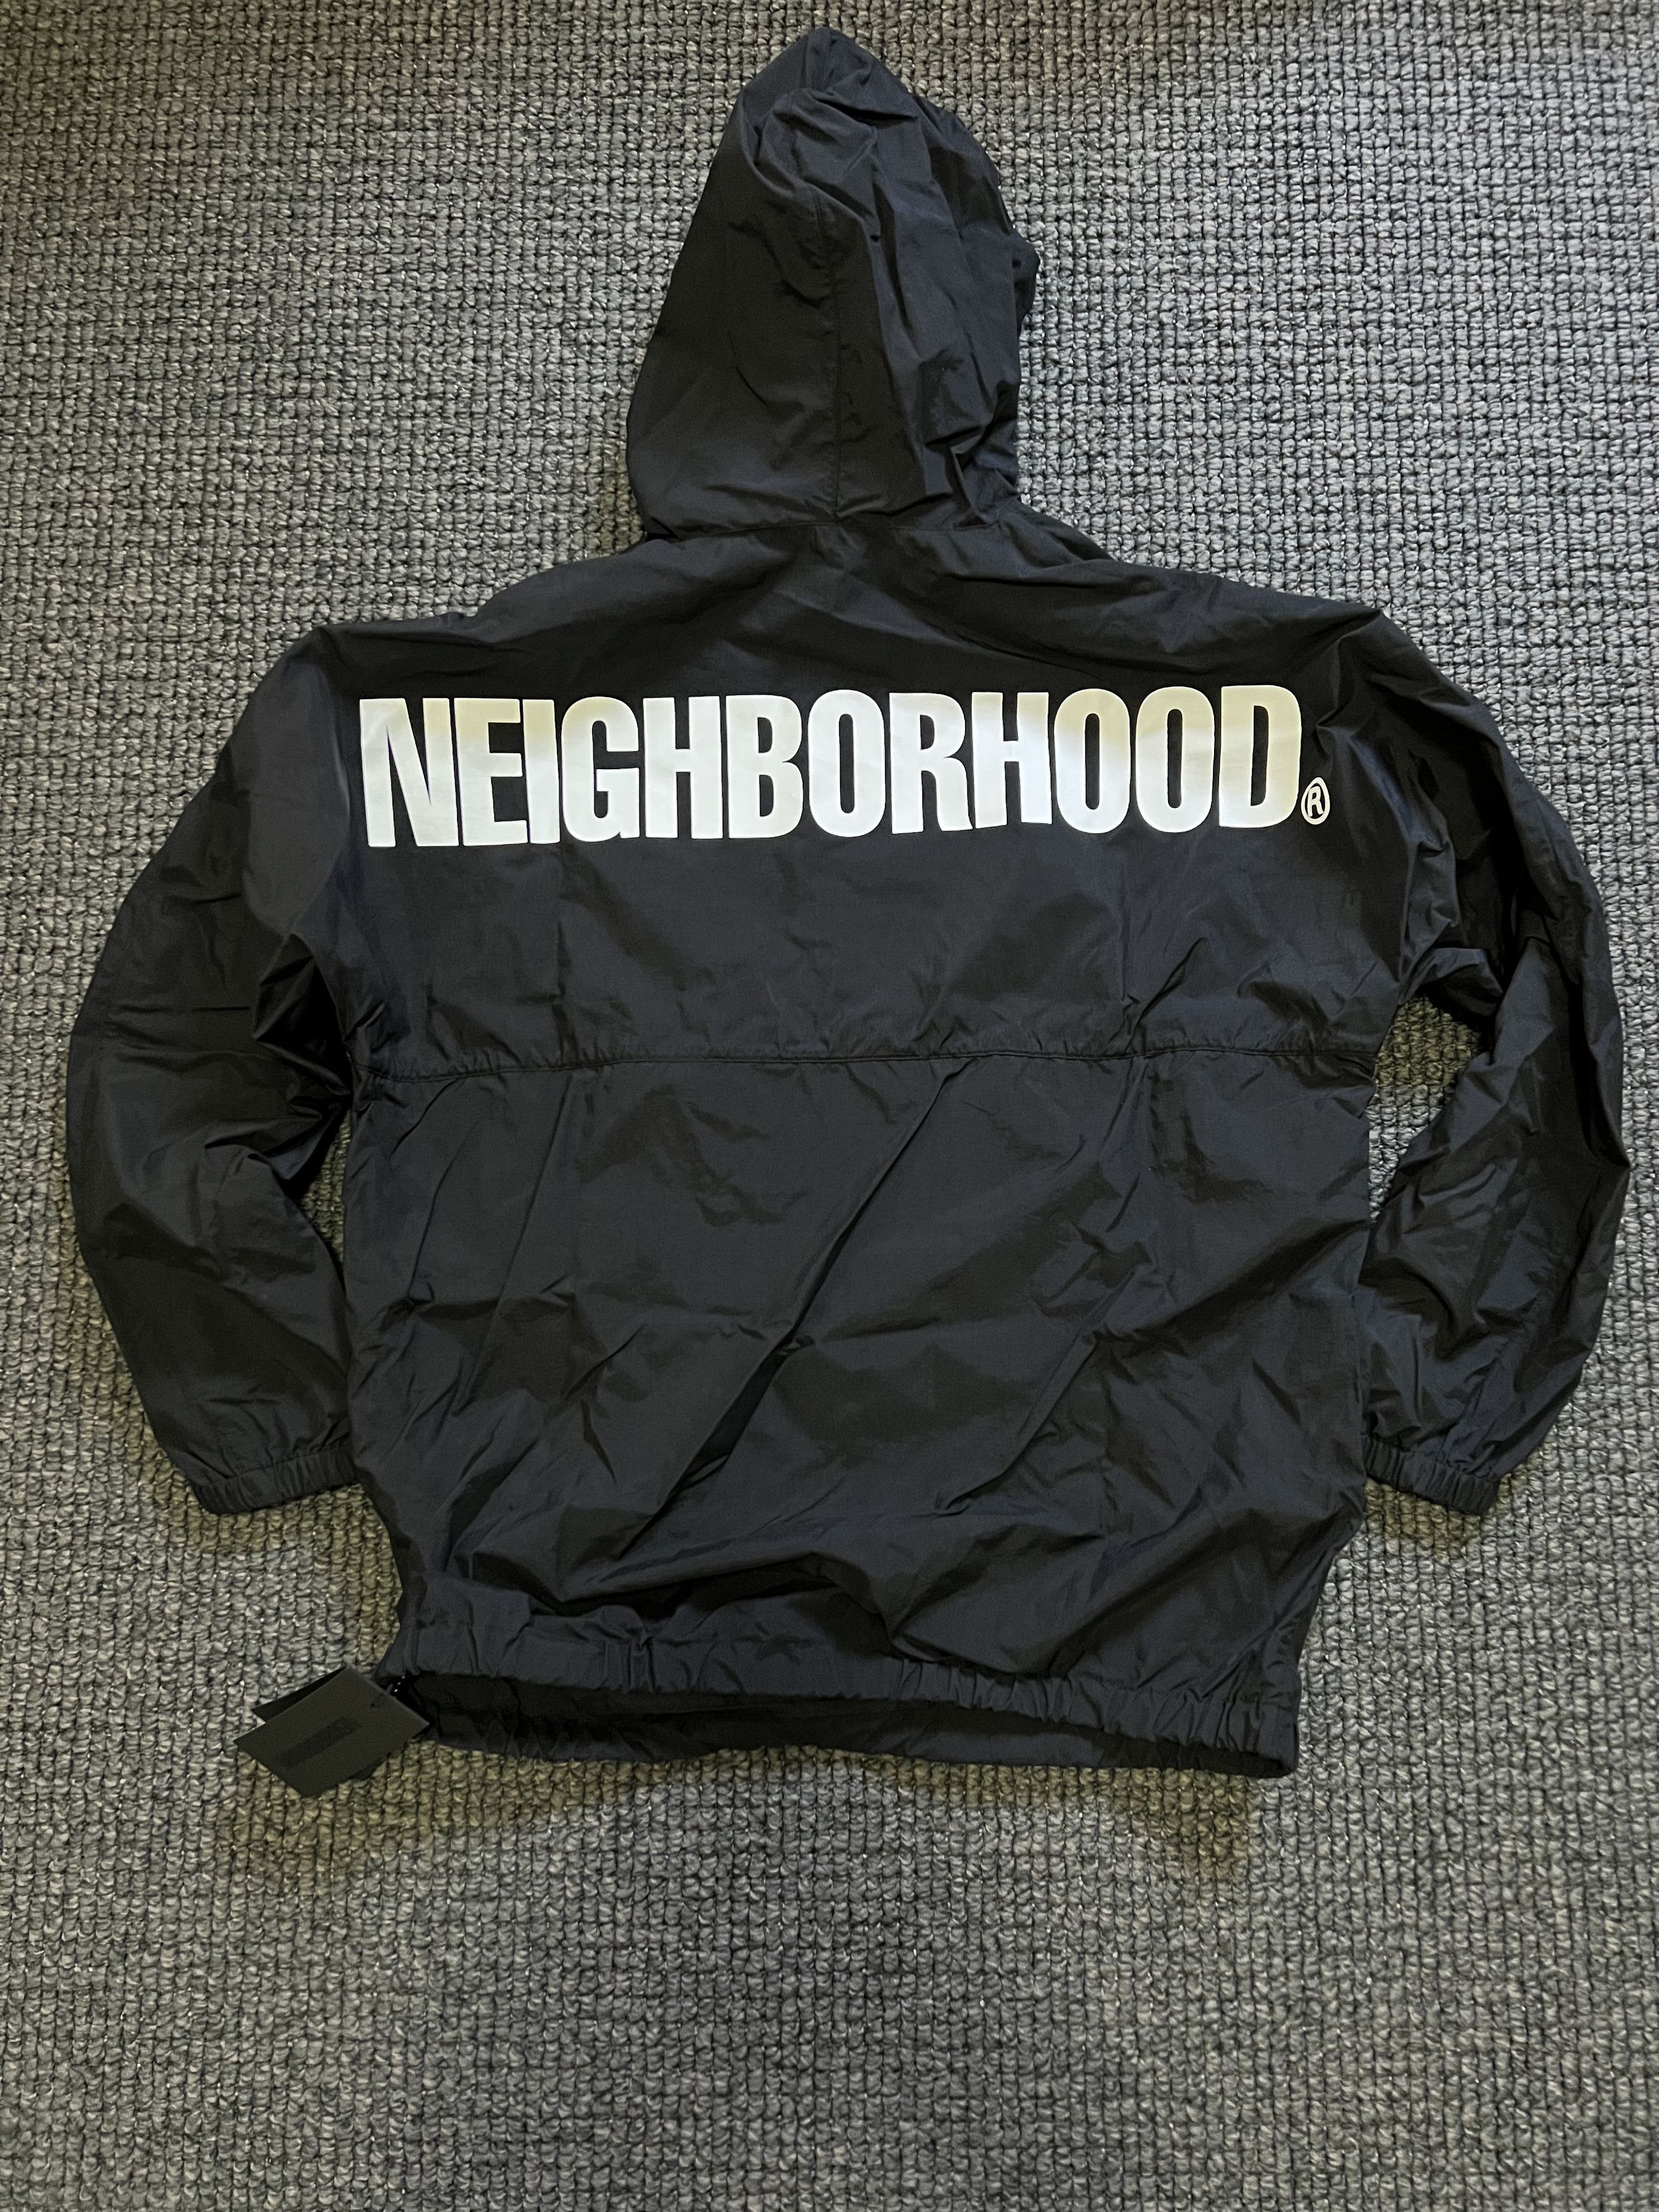 Neighborhood NEIGHBORHOOD ANORAK JACKET BLACK | Grailed